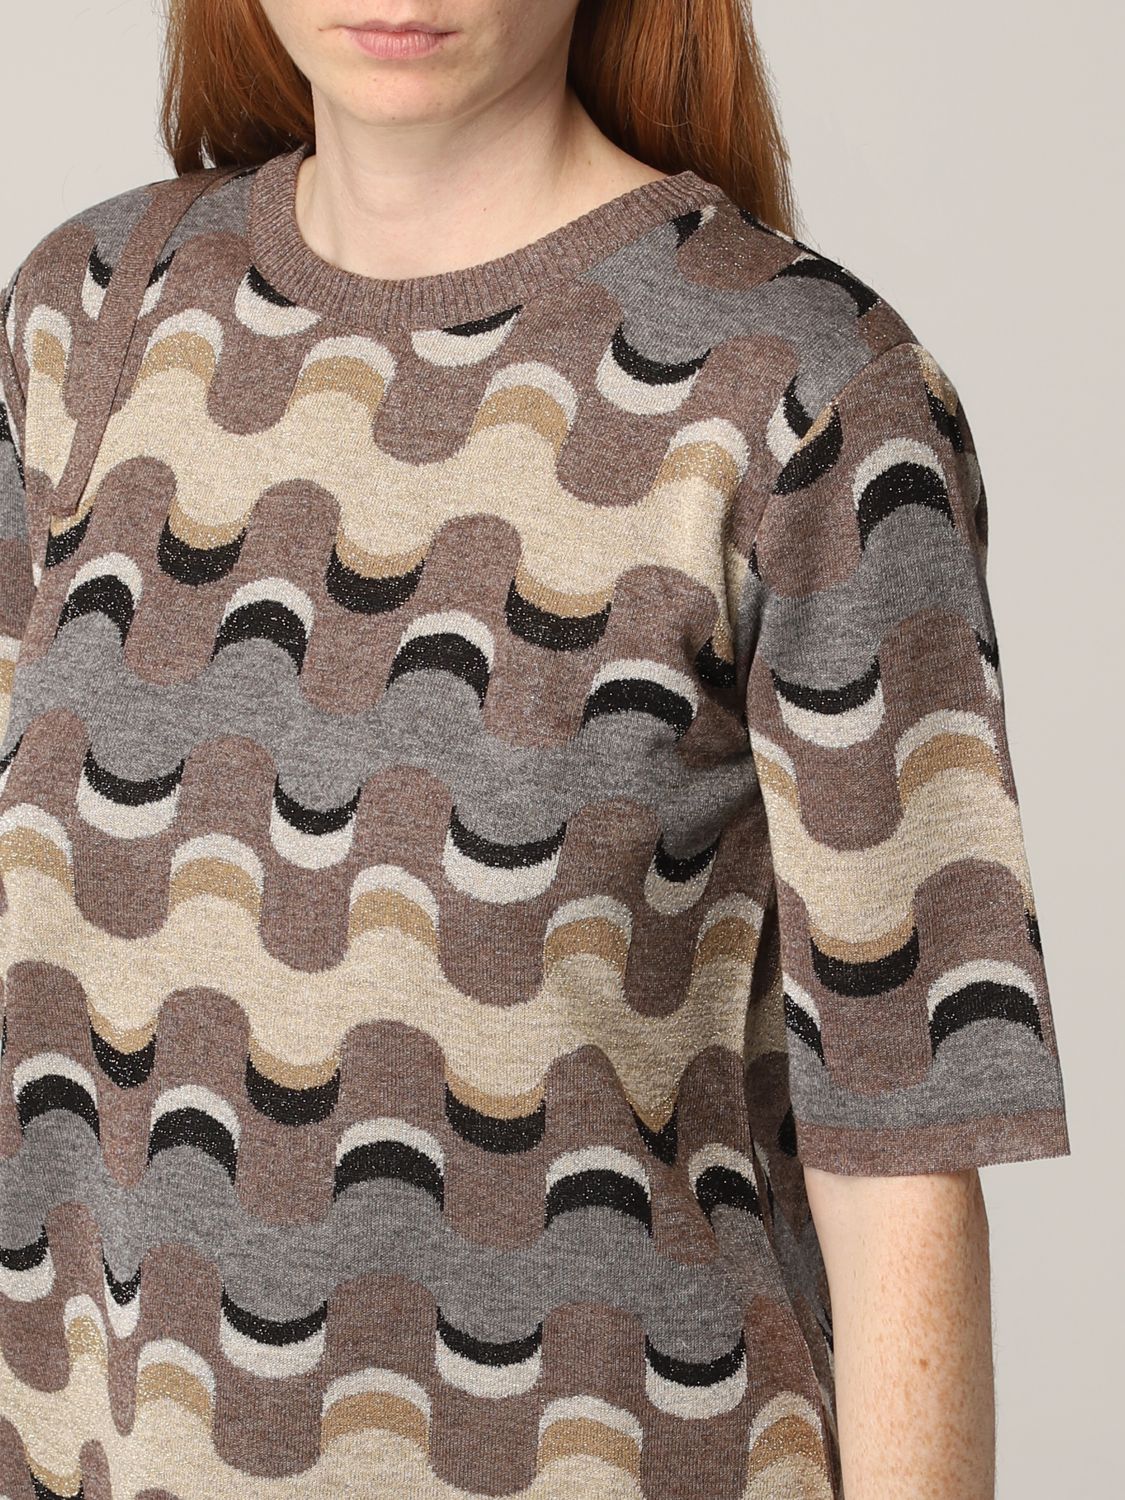 T-shirt Maliparmi: T-shirt Neo Modern Maliparmi in maglia di viscosa lurex marrone 3